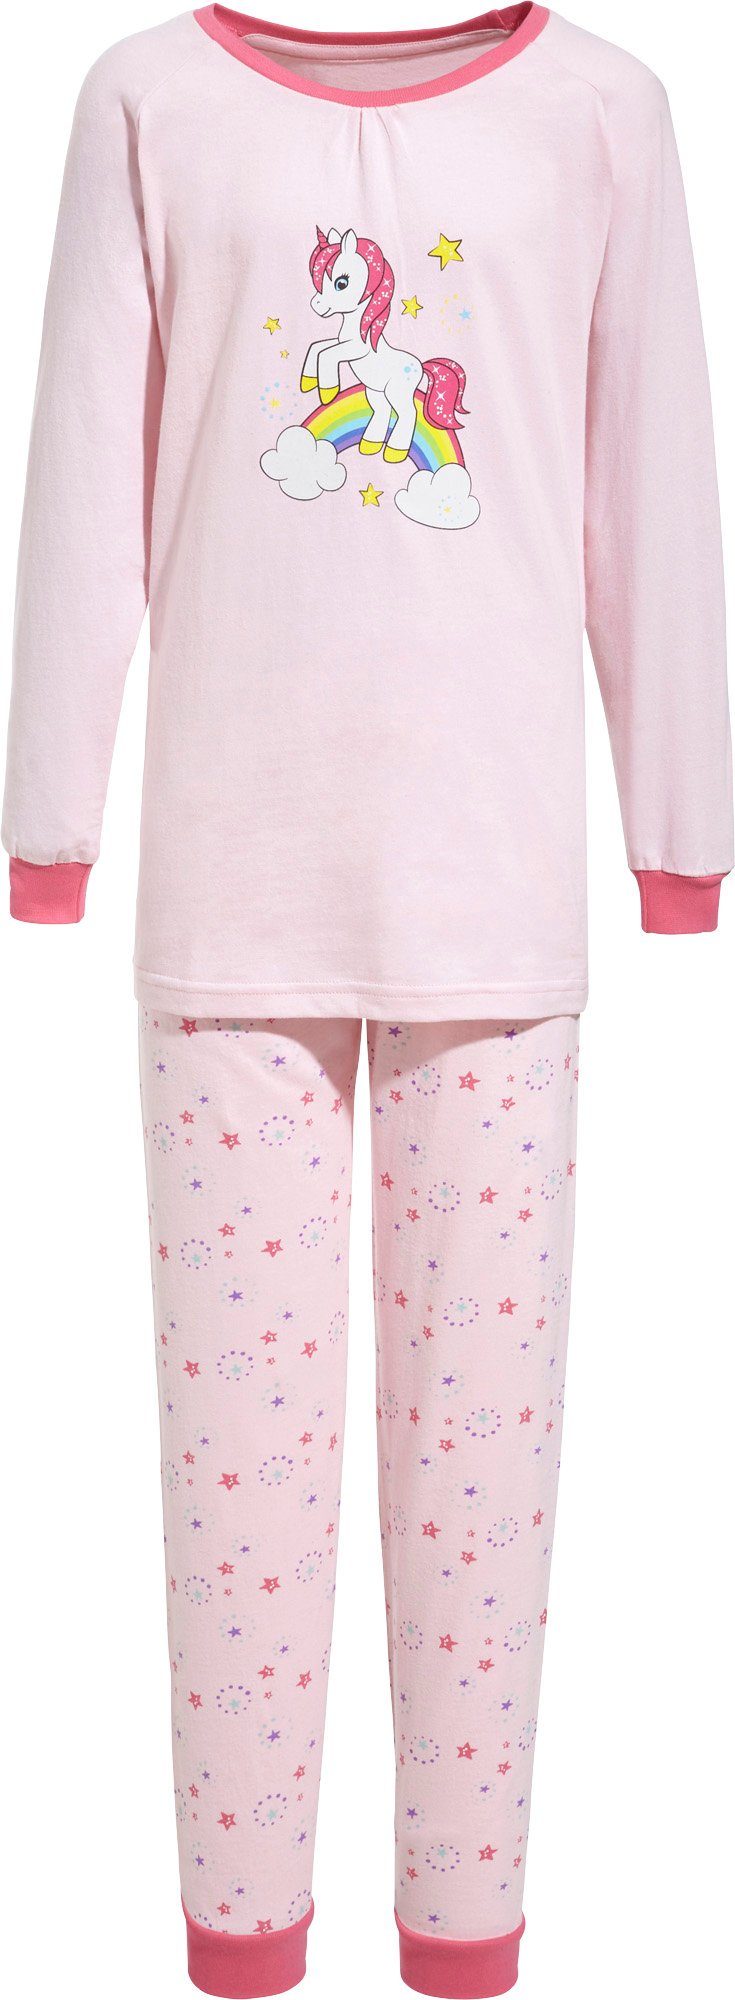 Kinder-Schlafanzug Pyjama Erwin Müller Tiermotive Single-Jersey